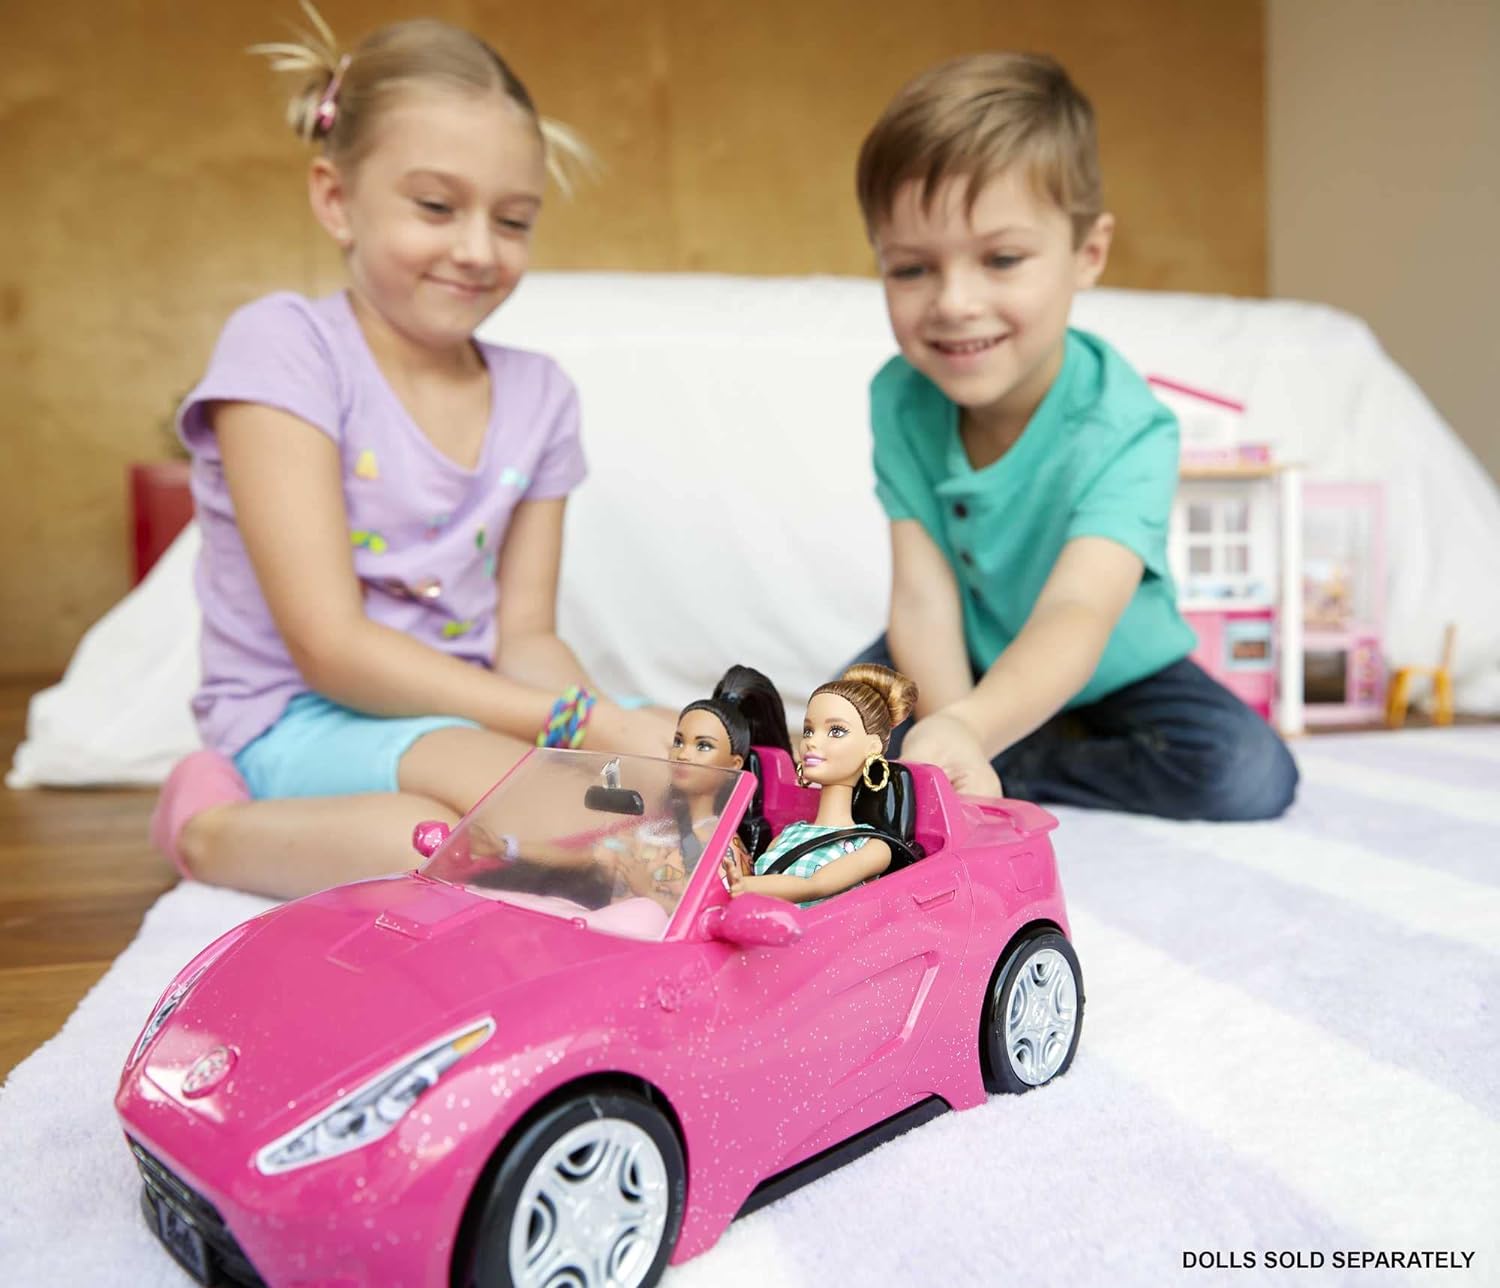 Voiture radio commandée Mattel Barbie Dream Car - Voiture télécommandée -  Achat & prix